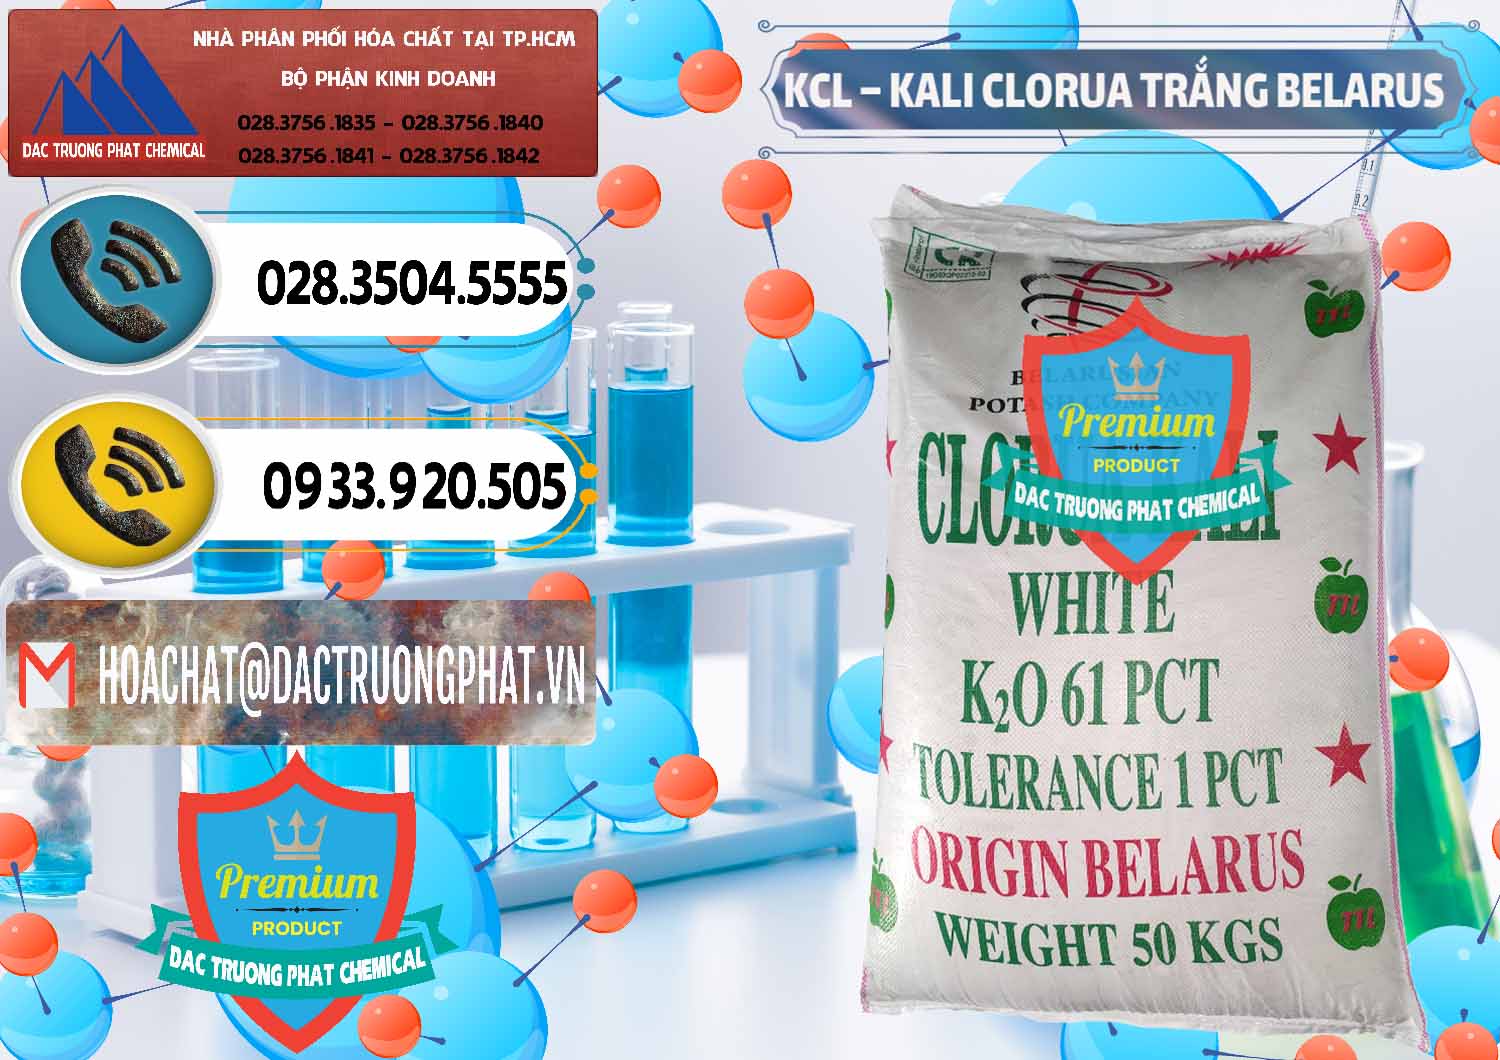 Công ty cung ứng _ bán KCL – Kali Clorua Trắng Belarus - 0085 - Cty phân phối & cung cấp hóa chất tại TP.HCM - hoachatdetnhuom.vn